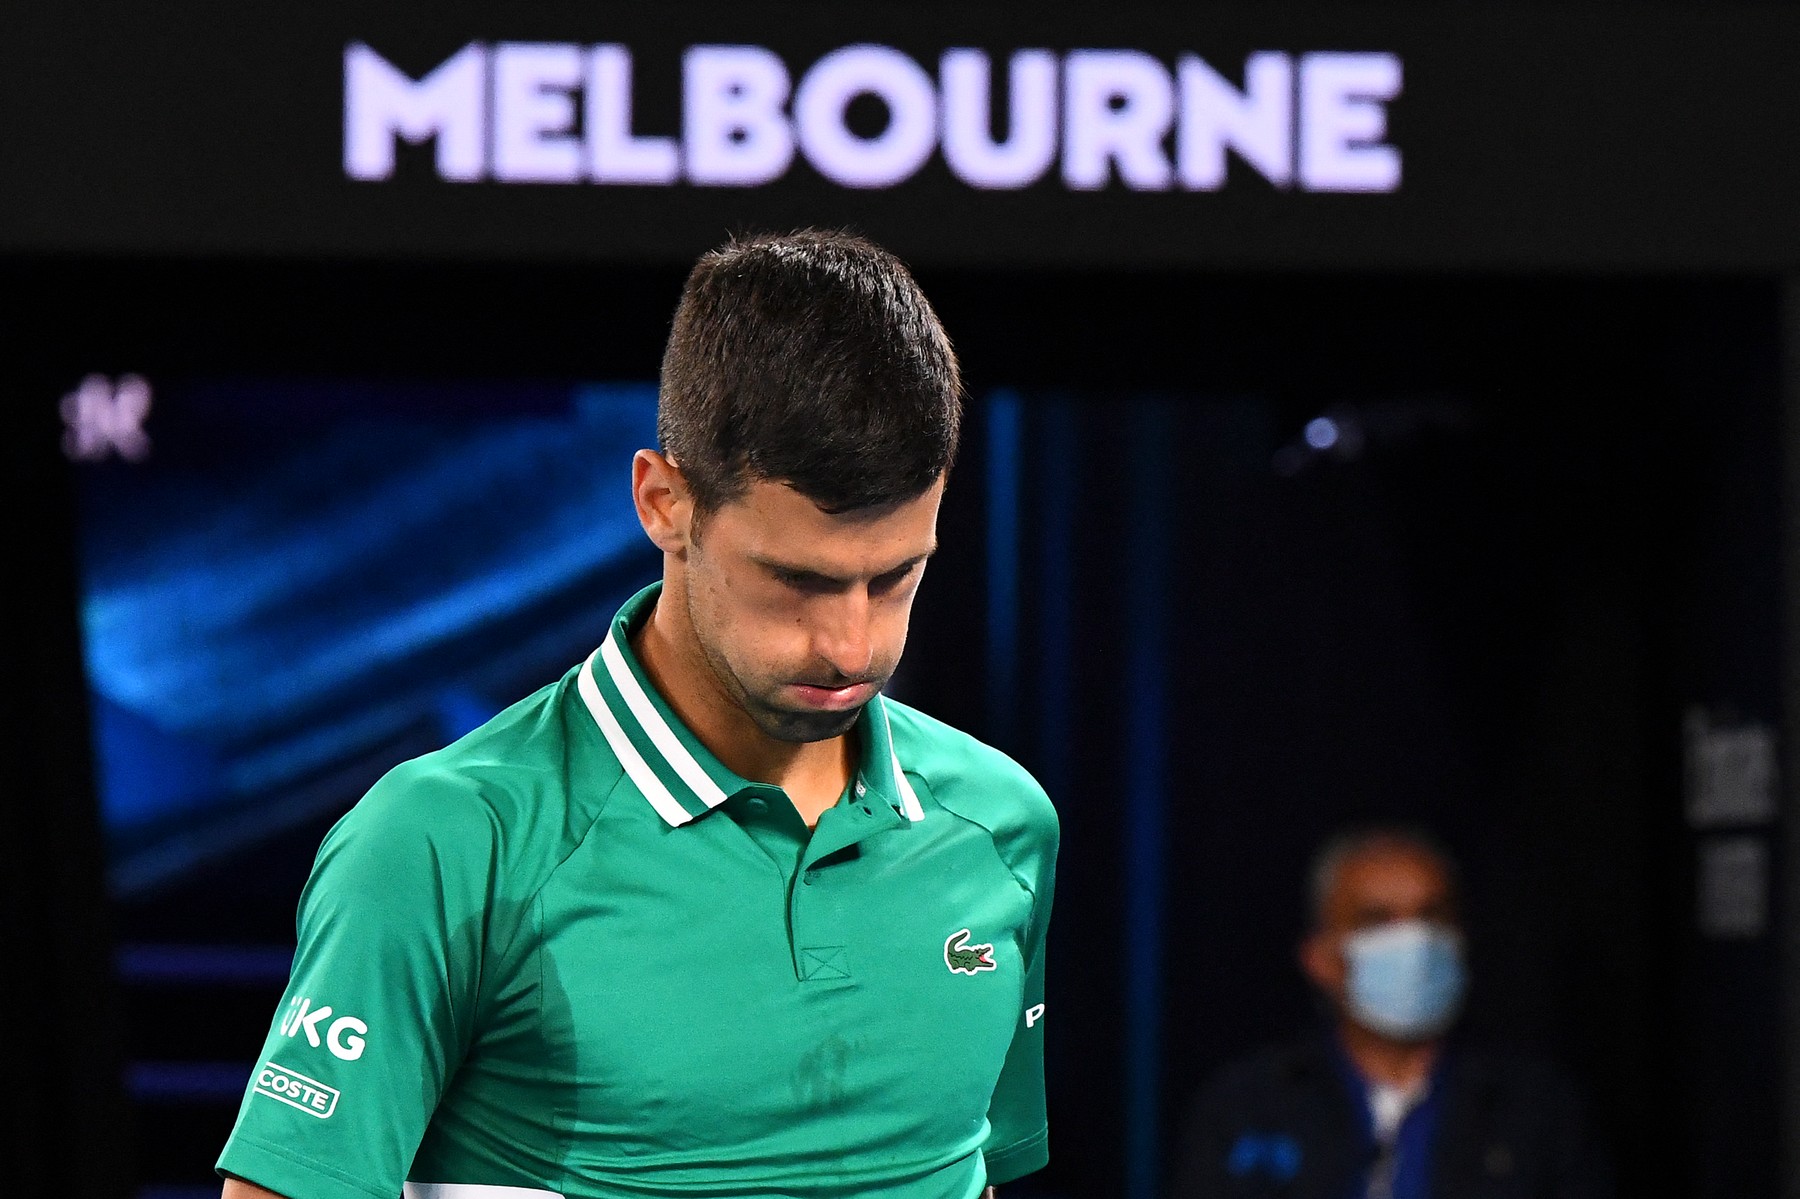 Suspansul continuă în privința lui Novak Djokovic